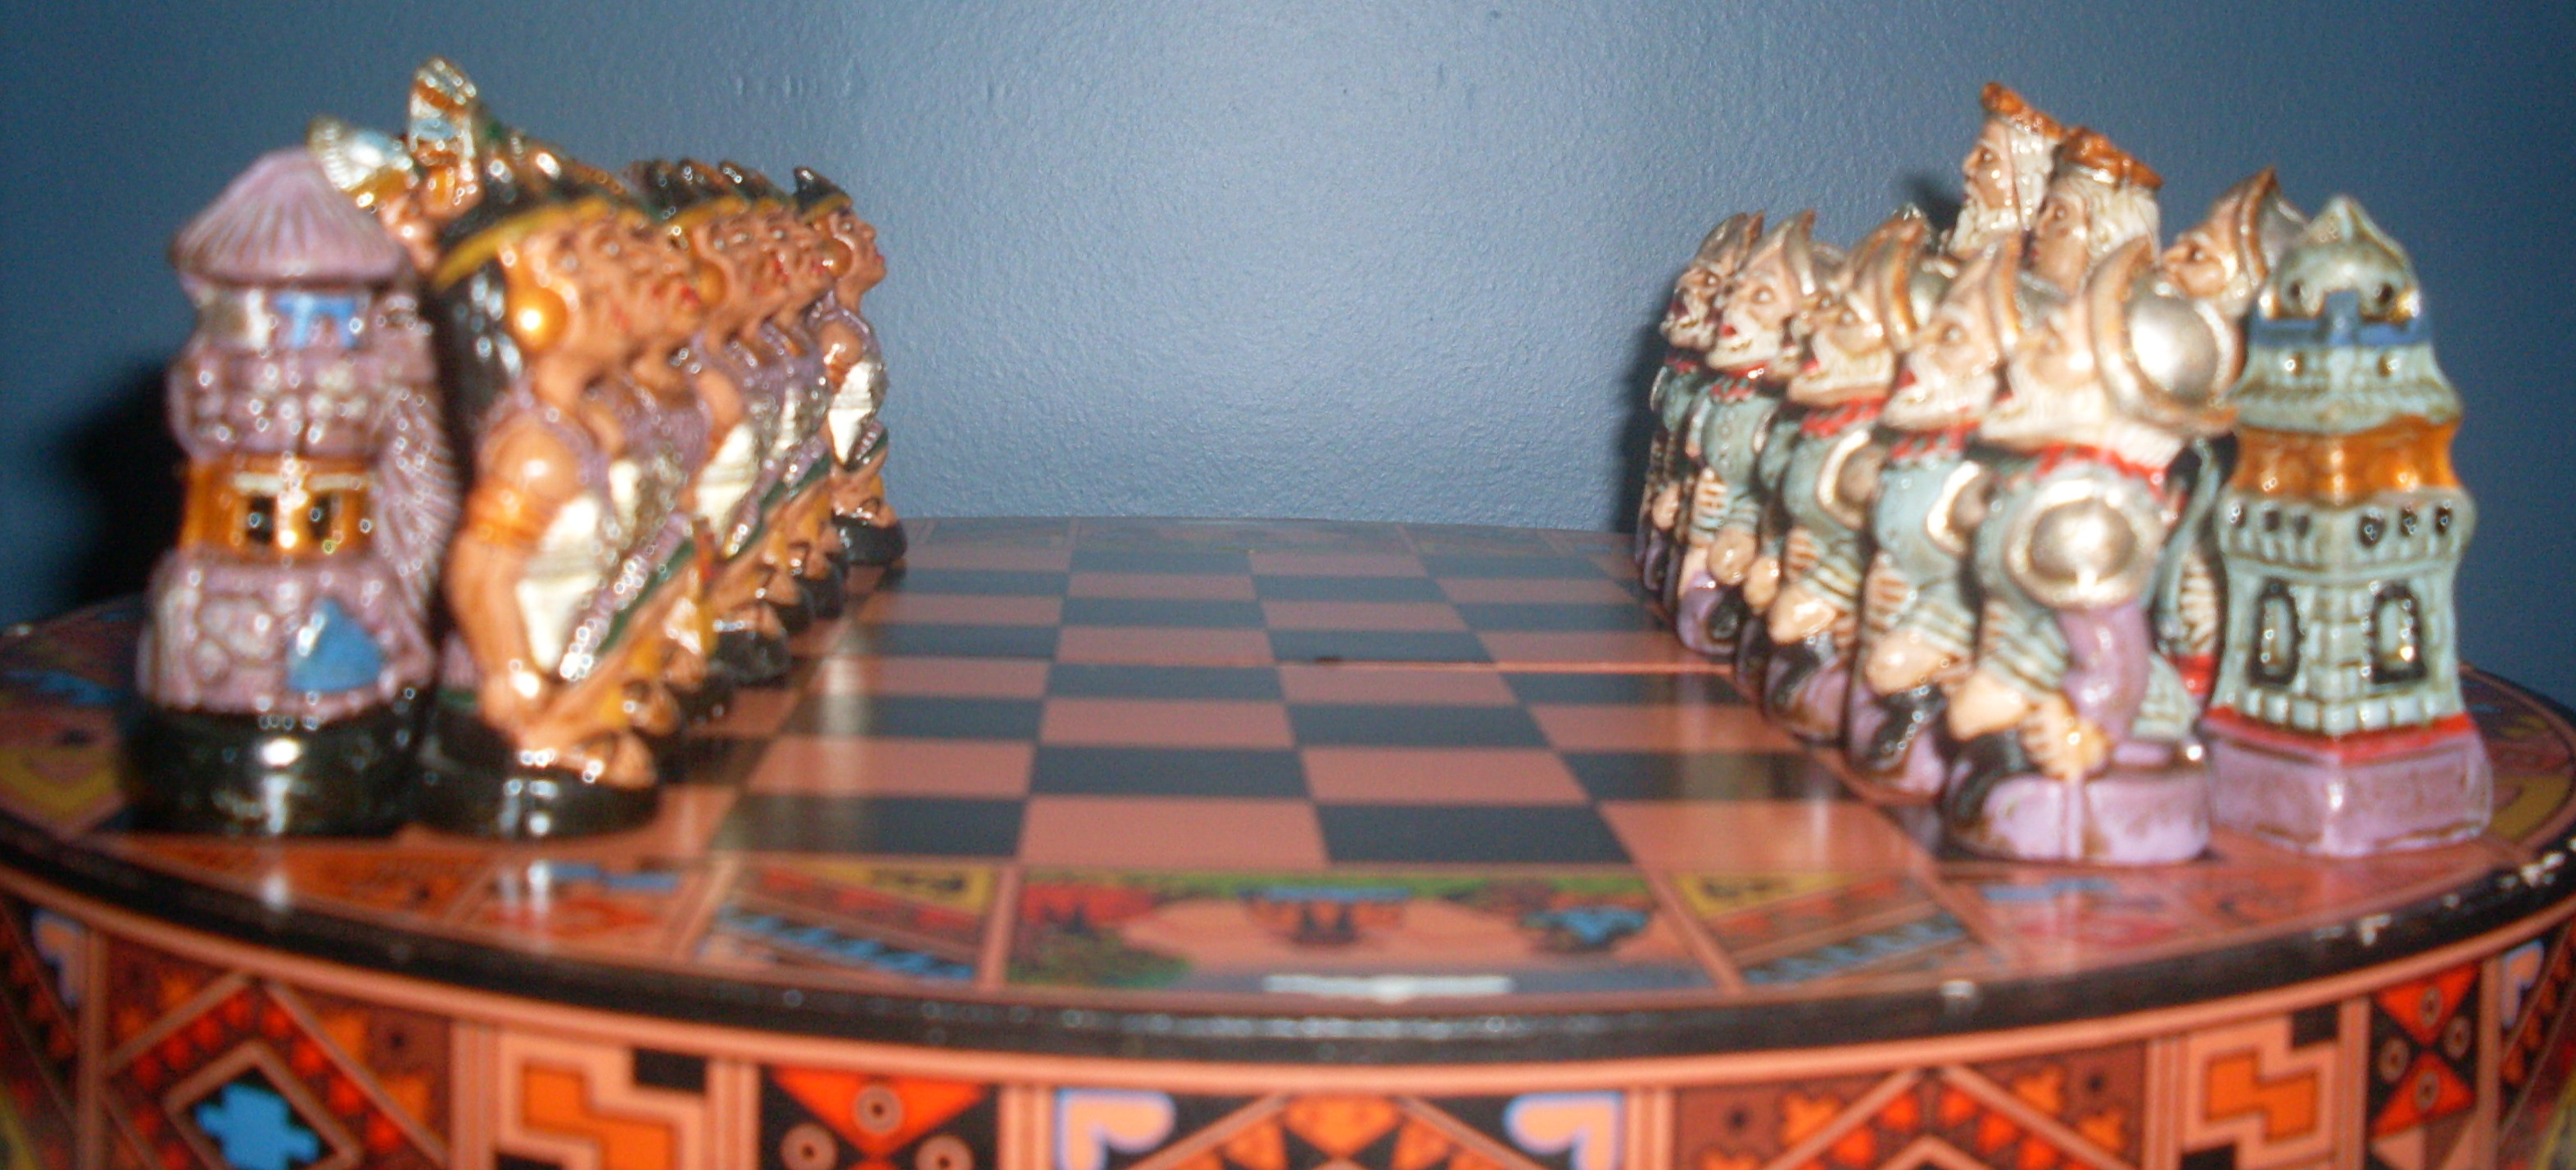 Xadrez de ouro no jogo de tabuleiro de xadrez para o conceito de